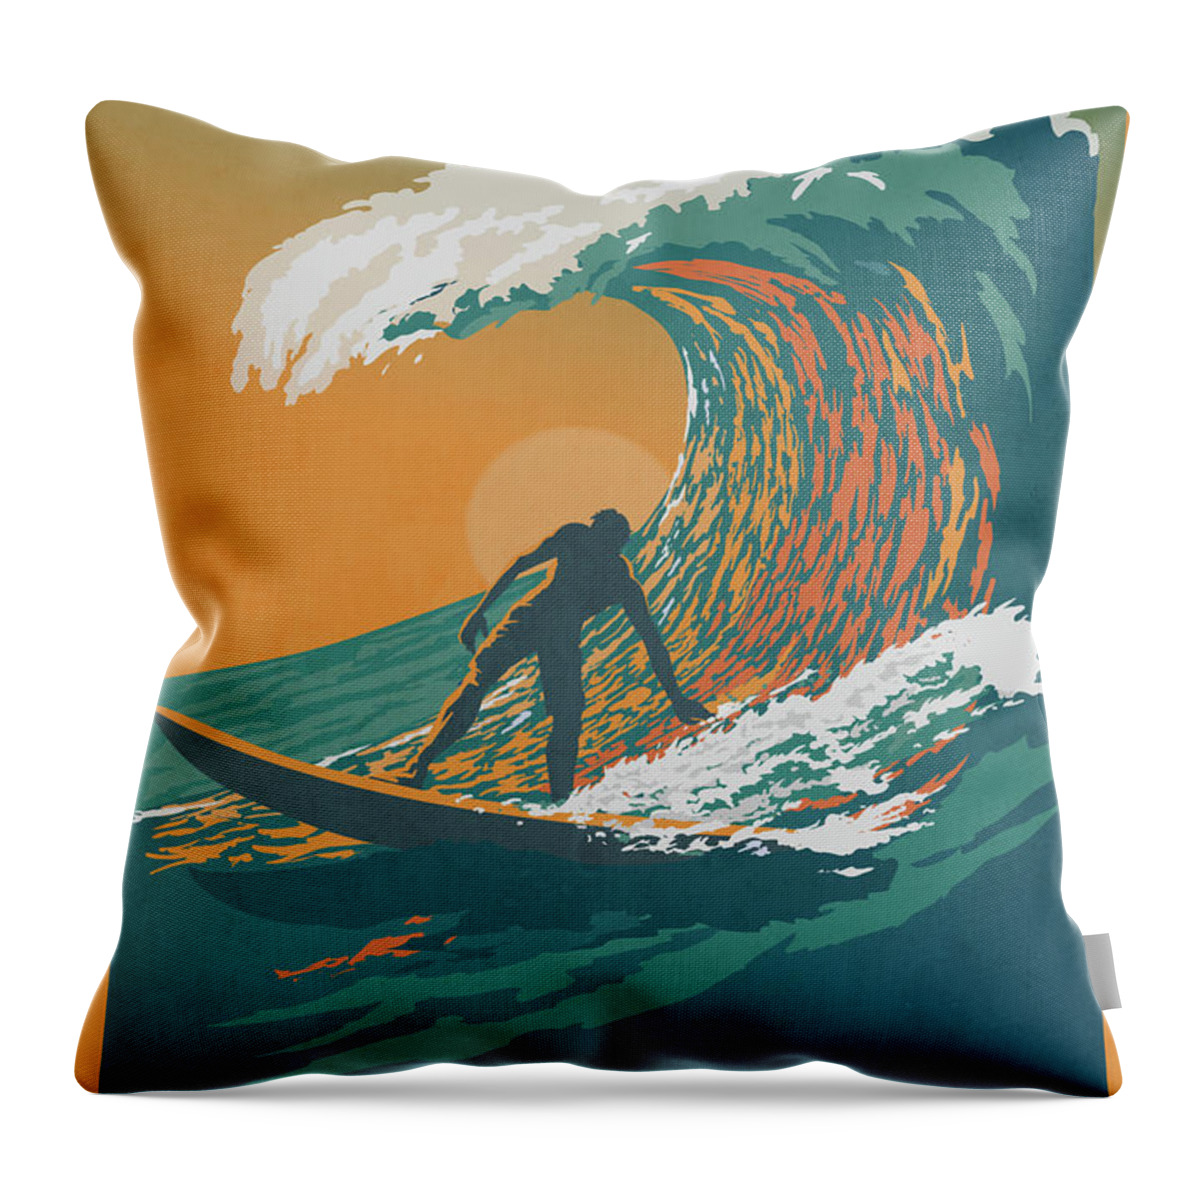 Surfer Throw Pillow featuring the digital art Ocean Life by Sassan Filsoof